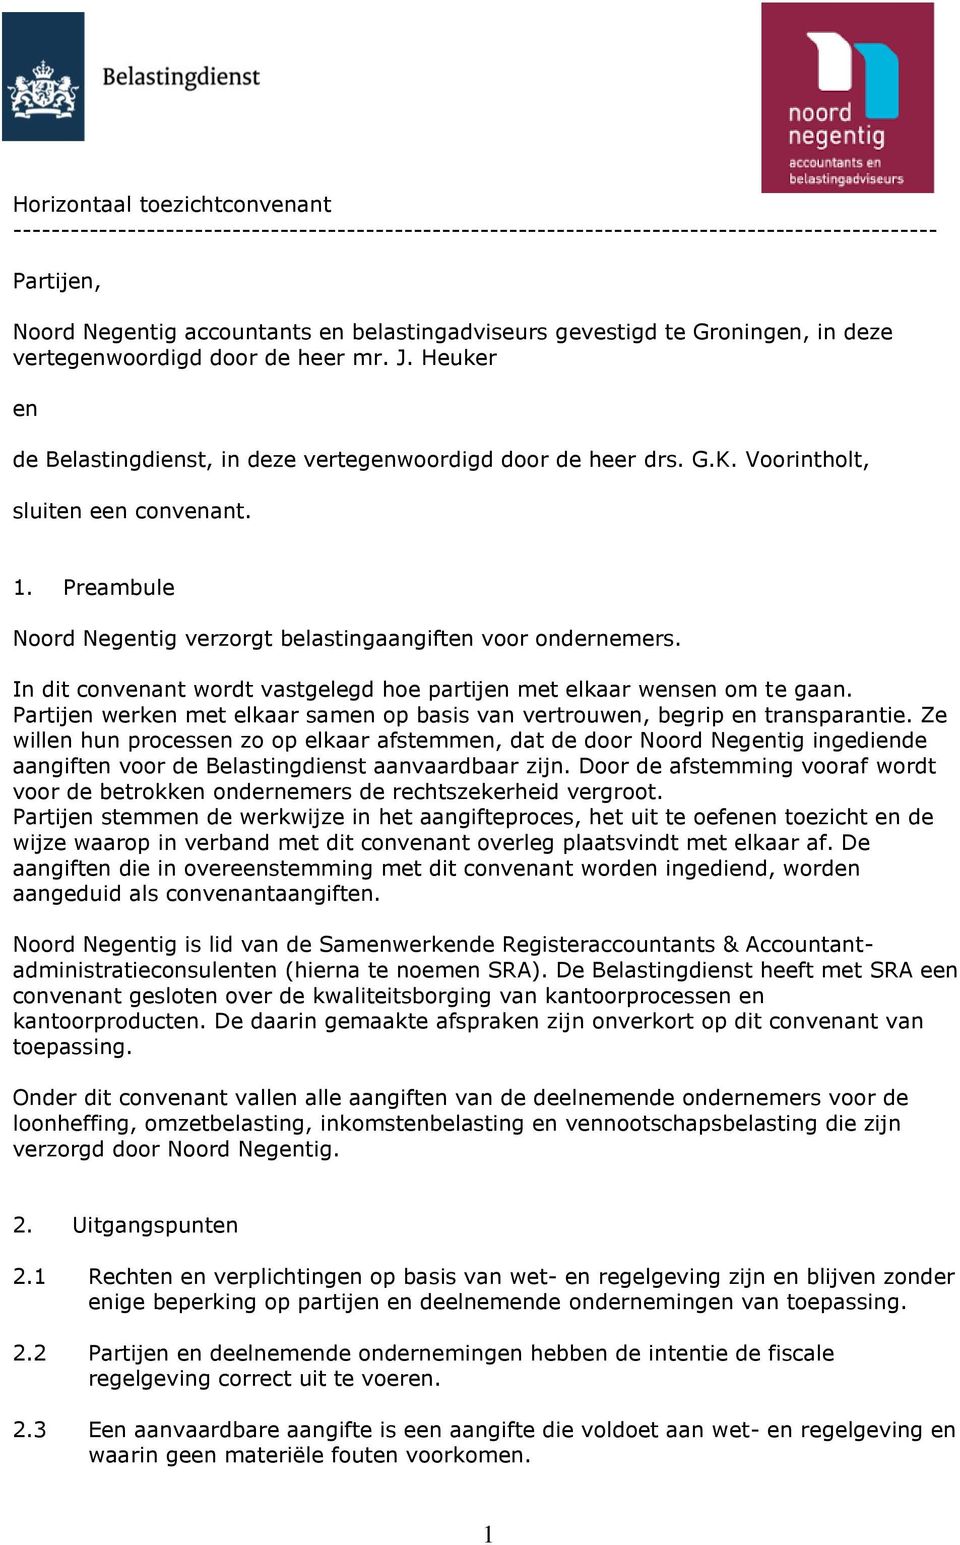 Preambule Noord Negentig verzorgt belastingaangiften voor ondernemers. In dit convenant wordt vastgelegd hoe partijen met elkaar wensen om te gaan.